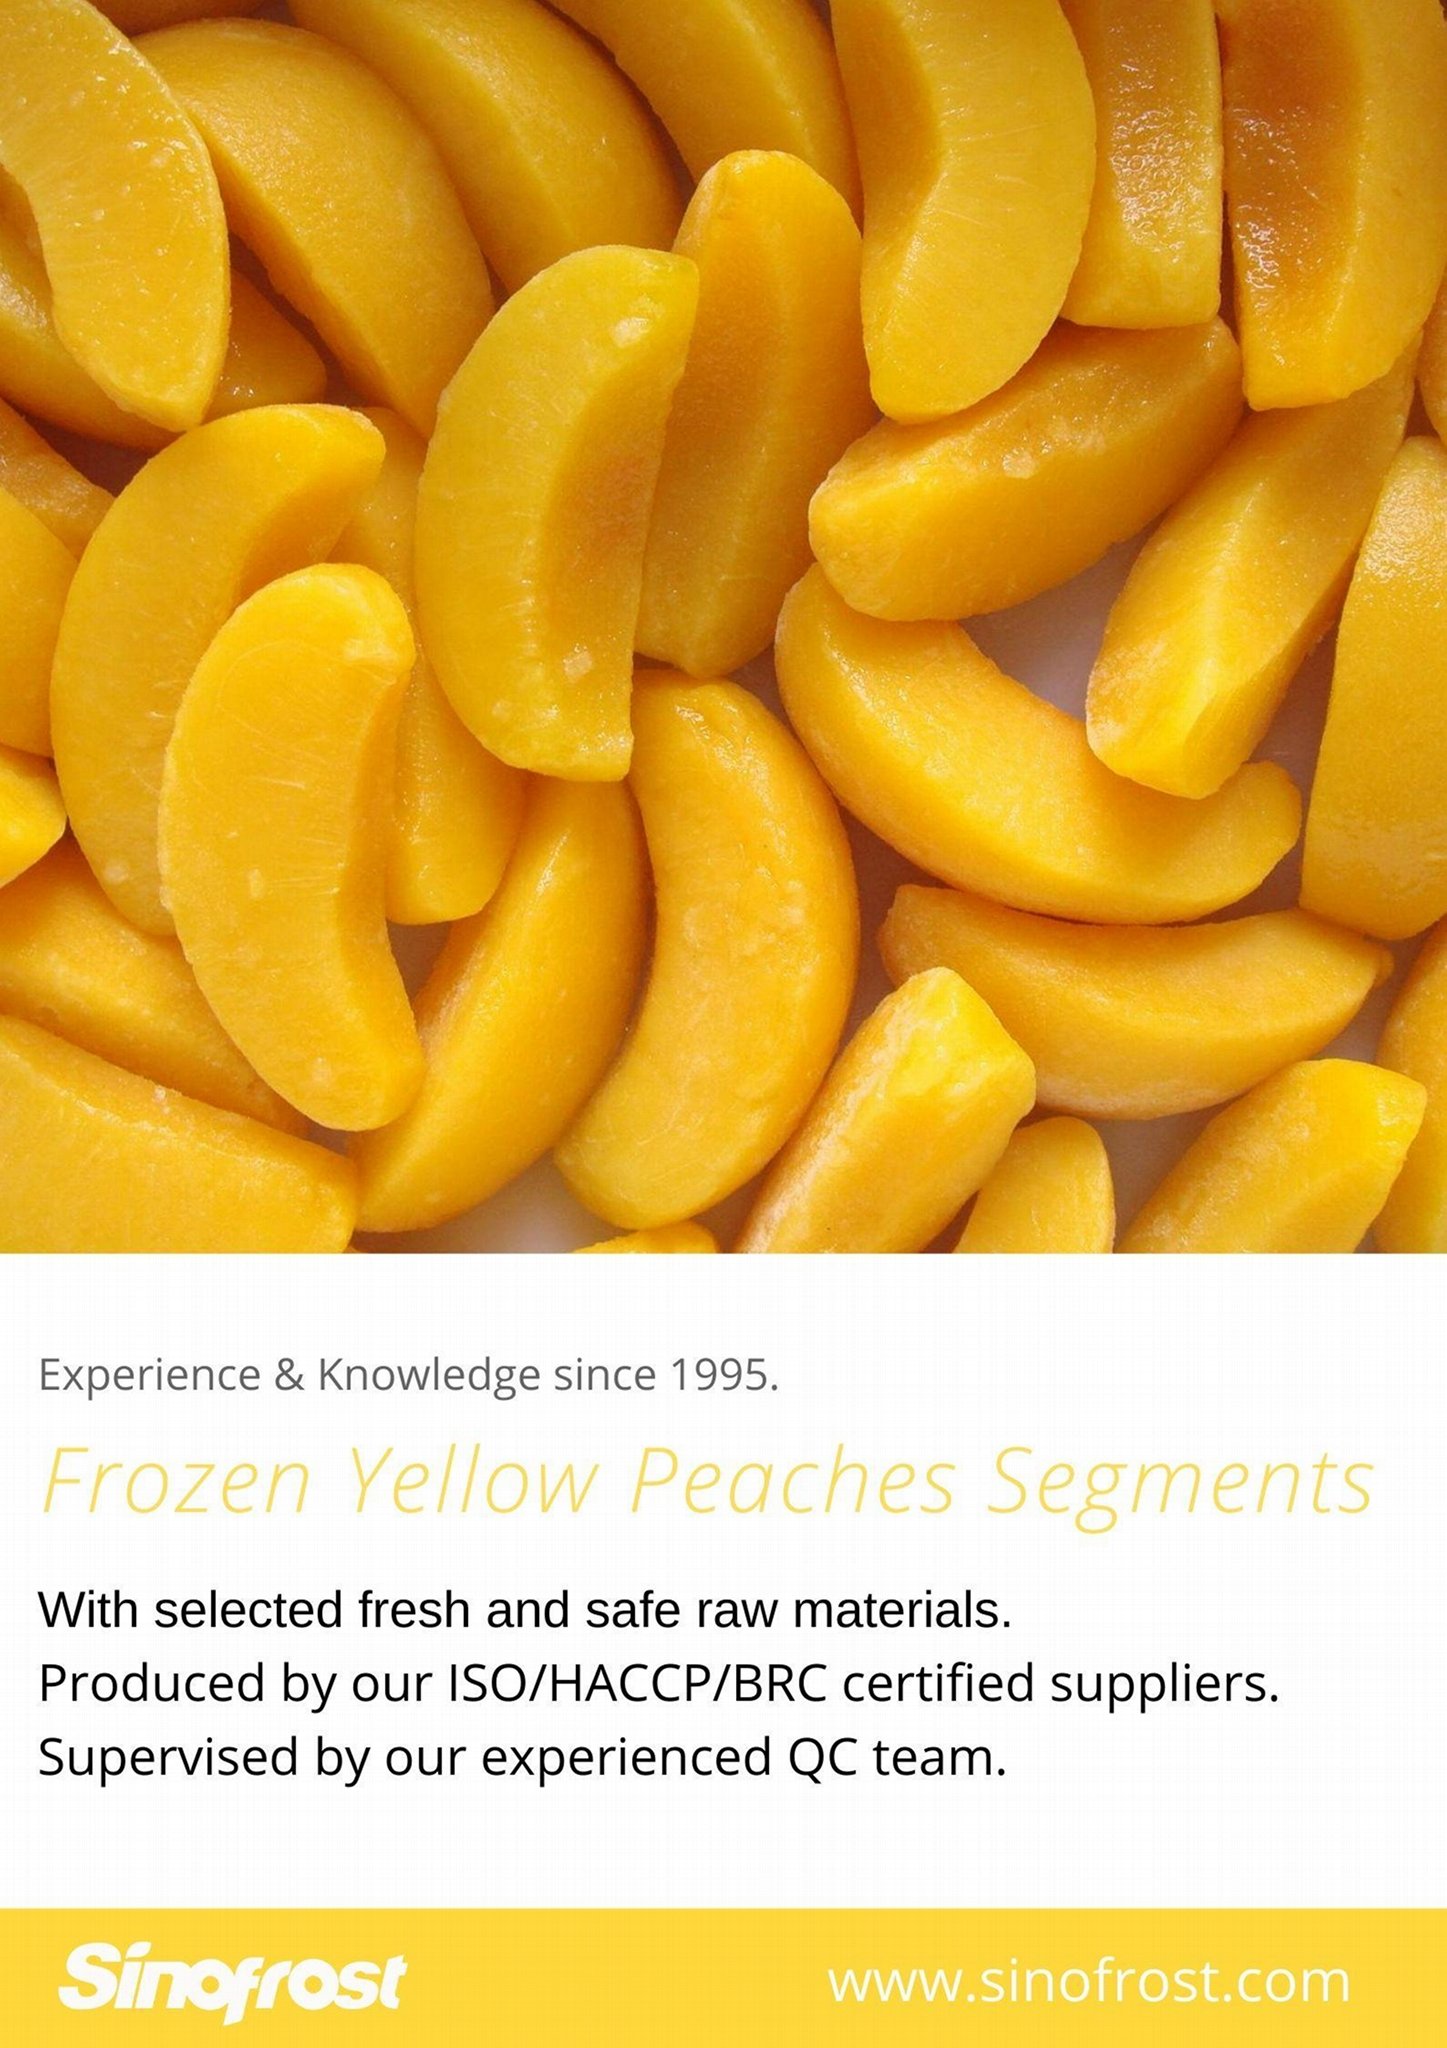 IQF Yellow Peaches Segments,Frozen Yellow Peach Segments,IQF Sliced Yellow Peach 2